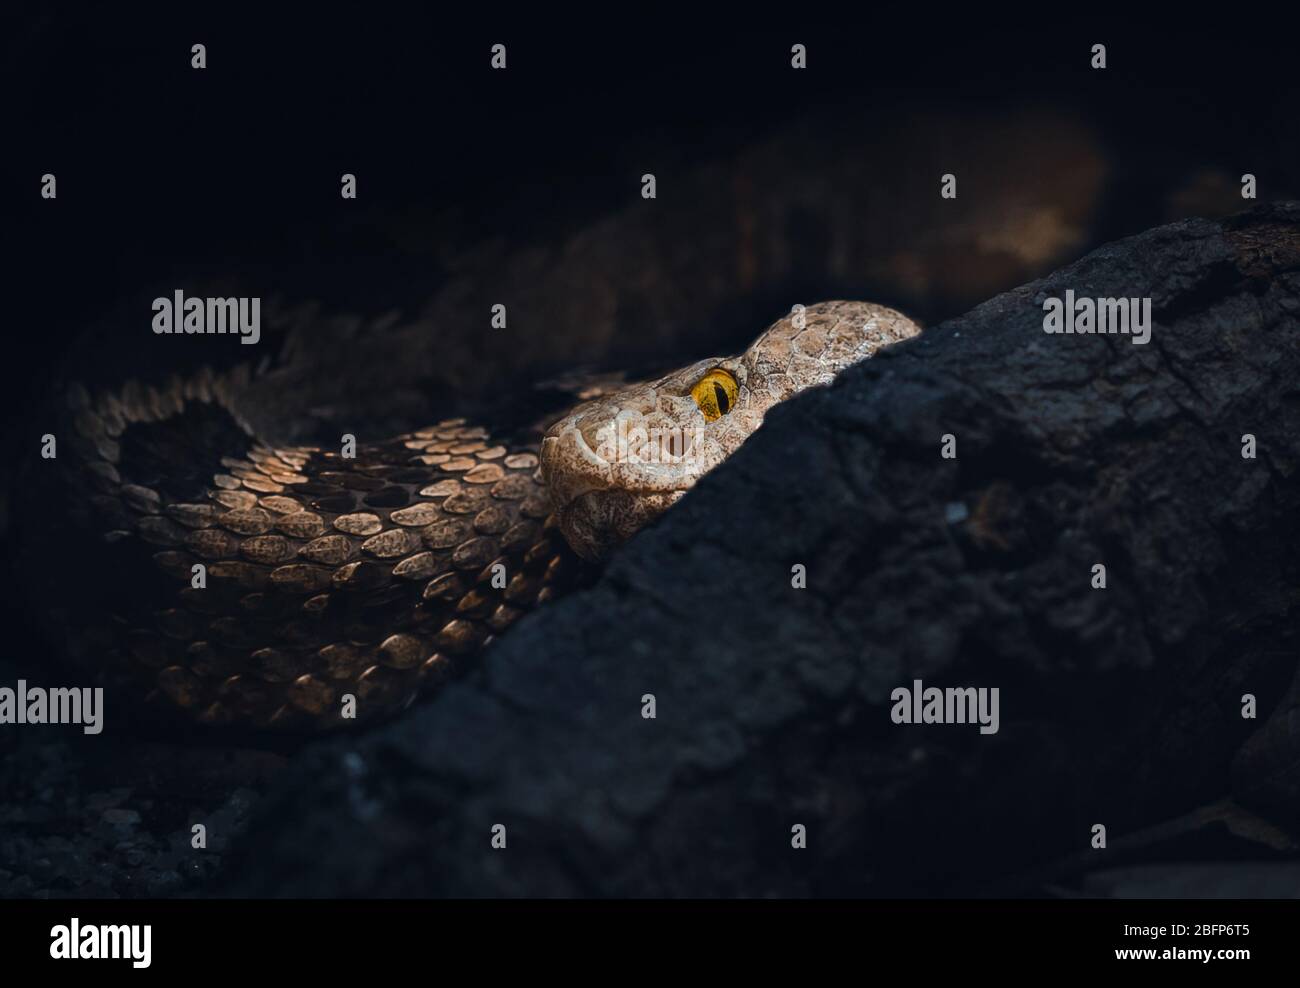 Un Pit-Viper della famiglia di serpenti Bothrops. Responsabile di più morti in America Centrale e Sud di qualsiasi altro serpente. Si vuole evitare :) Foto Stock